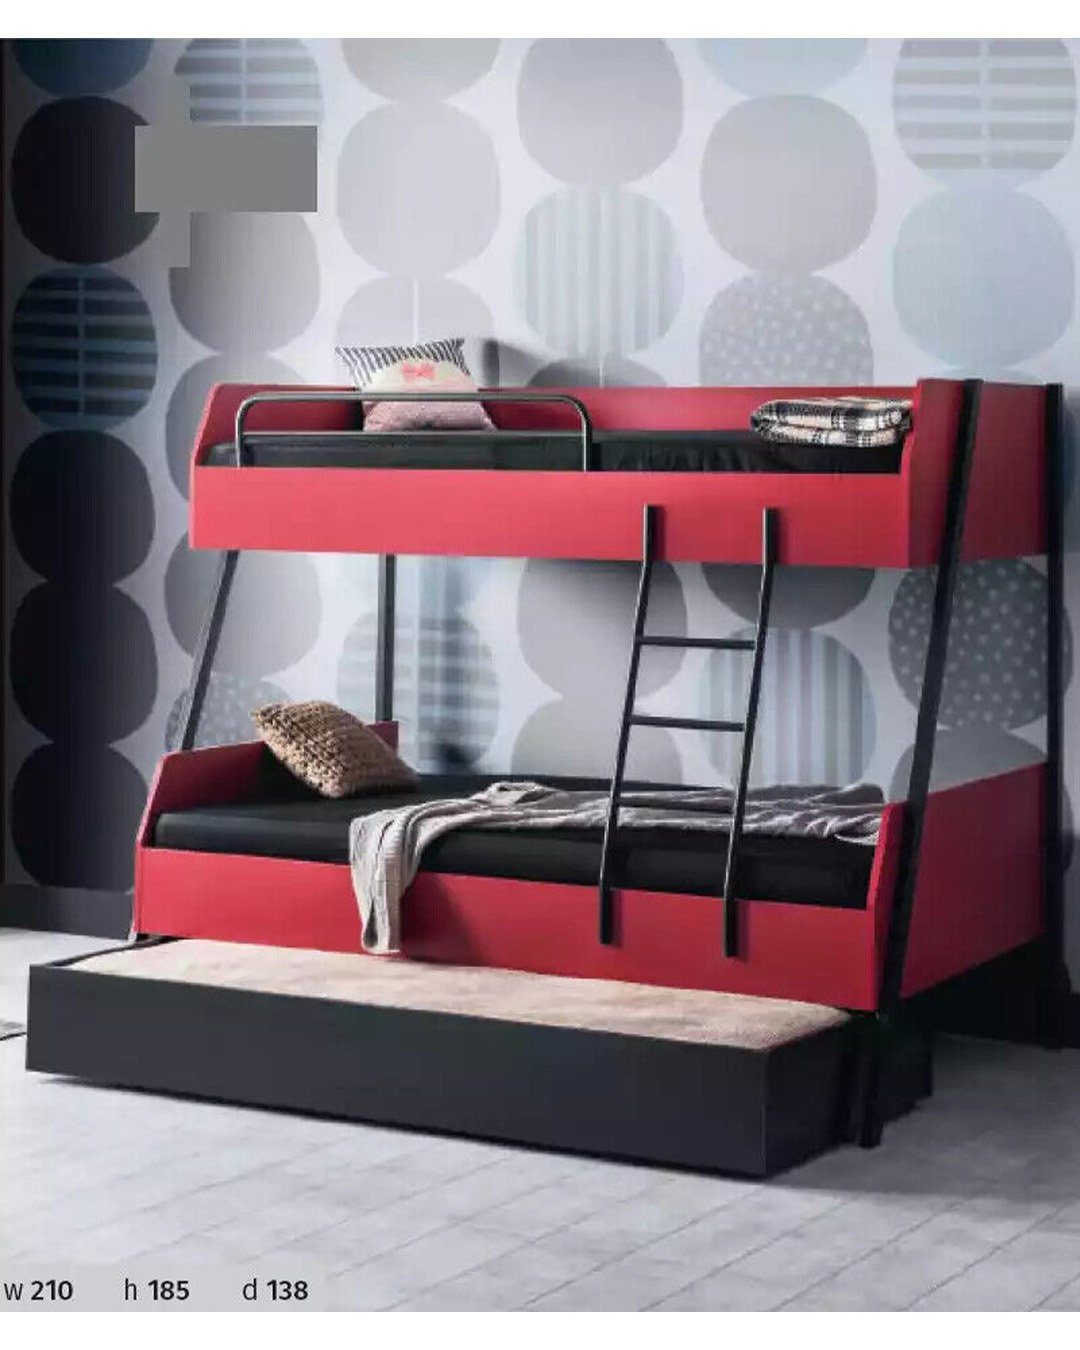 JVmoebel Etagenbett, Kinderbett Modern Jugendbett Kinderzimmer Holz Bett Design Betten Kids